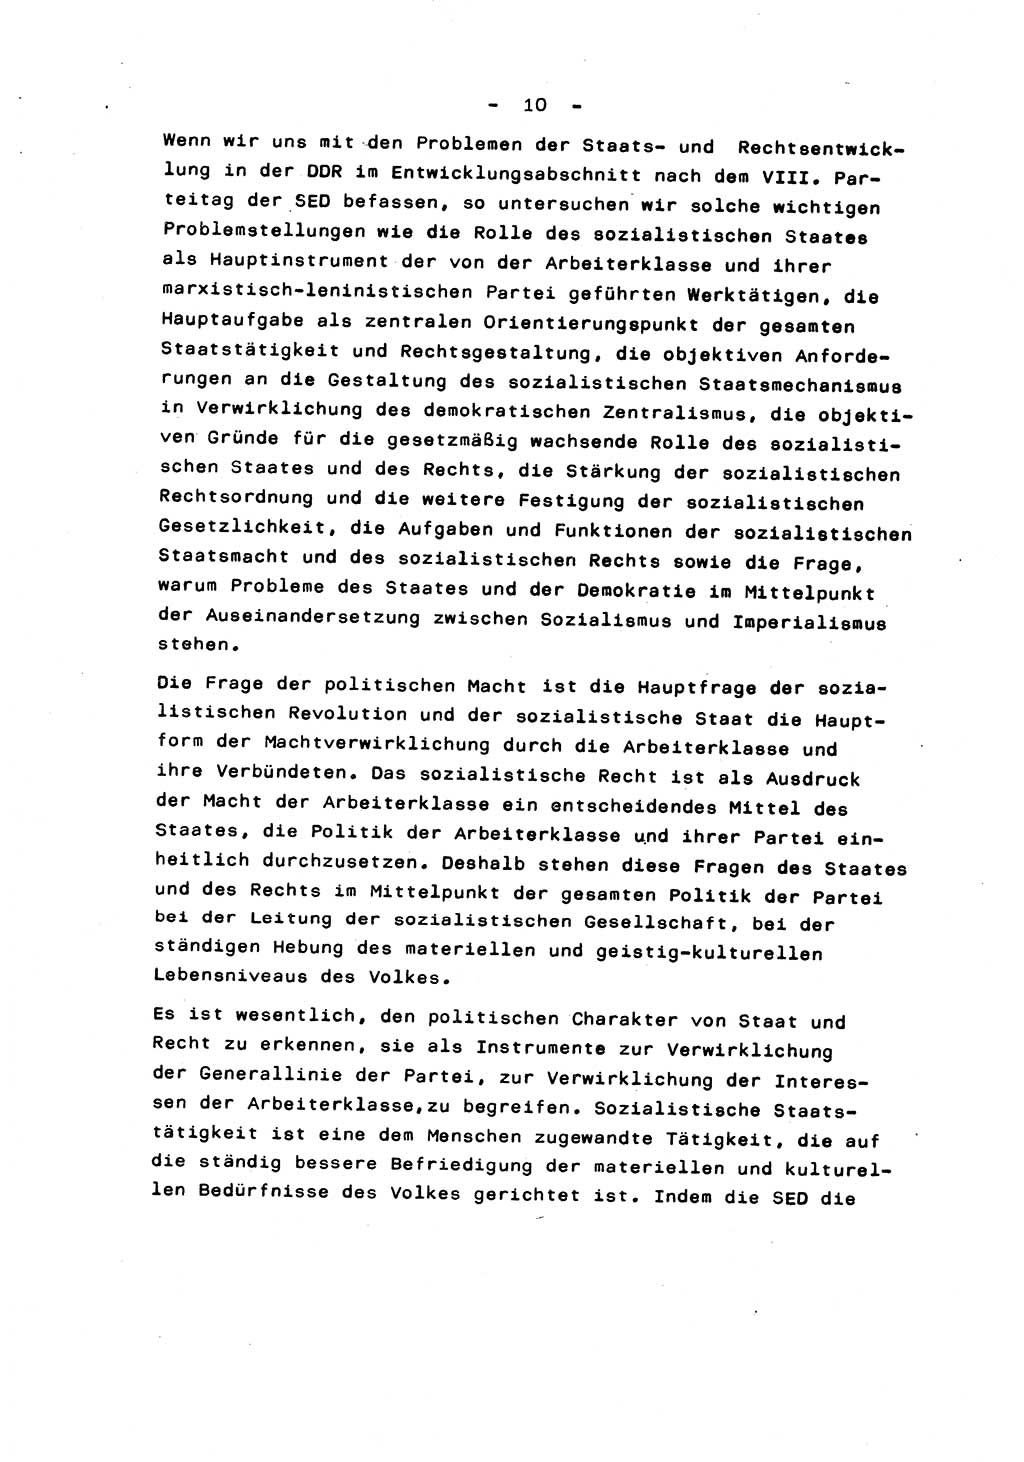 Marxistisch-leninistische Staats- und Rechtstheorie [Deutsche Demokratische Republik (DDR)] 1975, Seite 10 (ML St.-R.-Th. DDR 1975, S. 10)